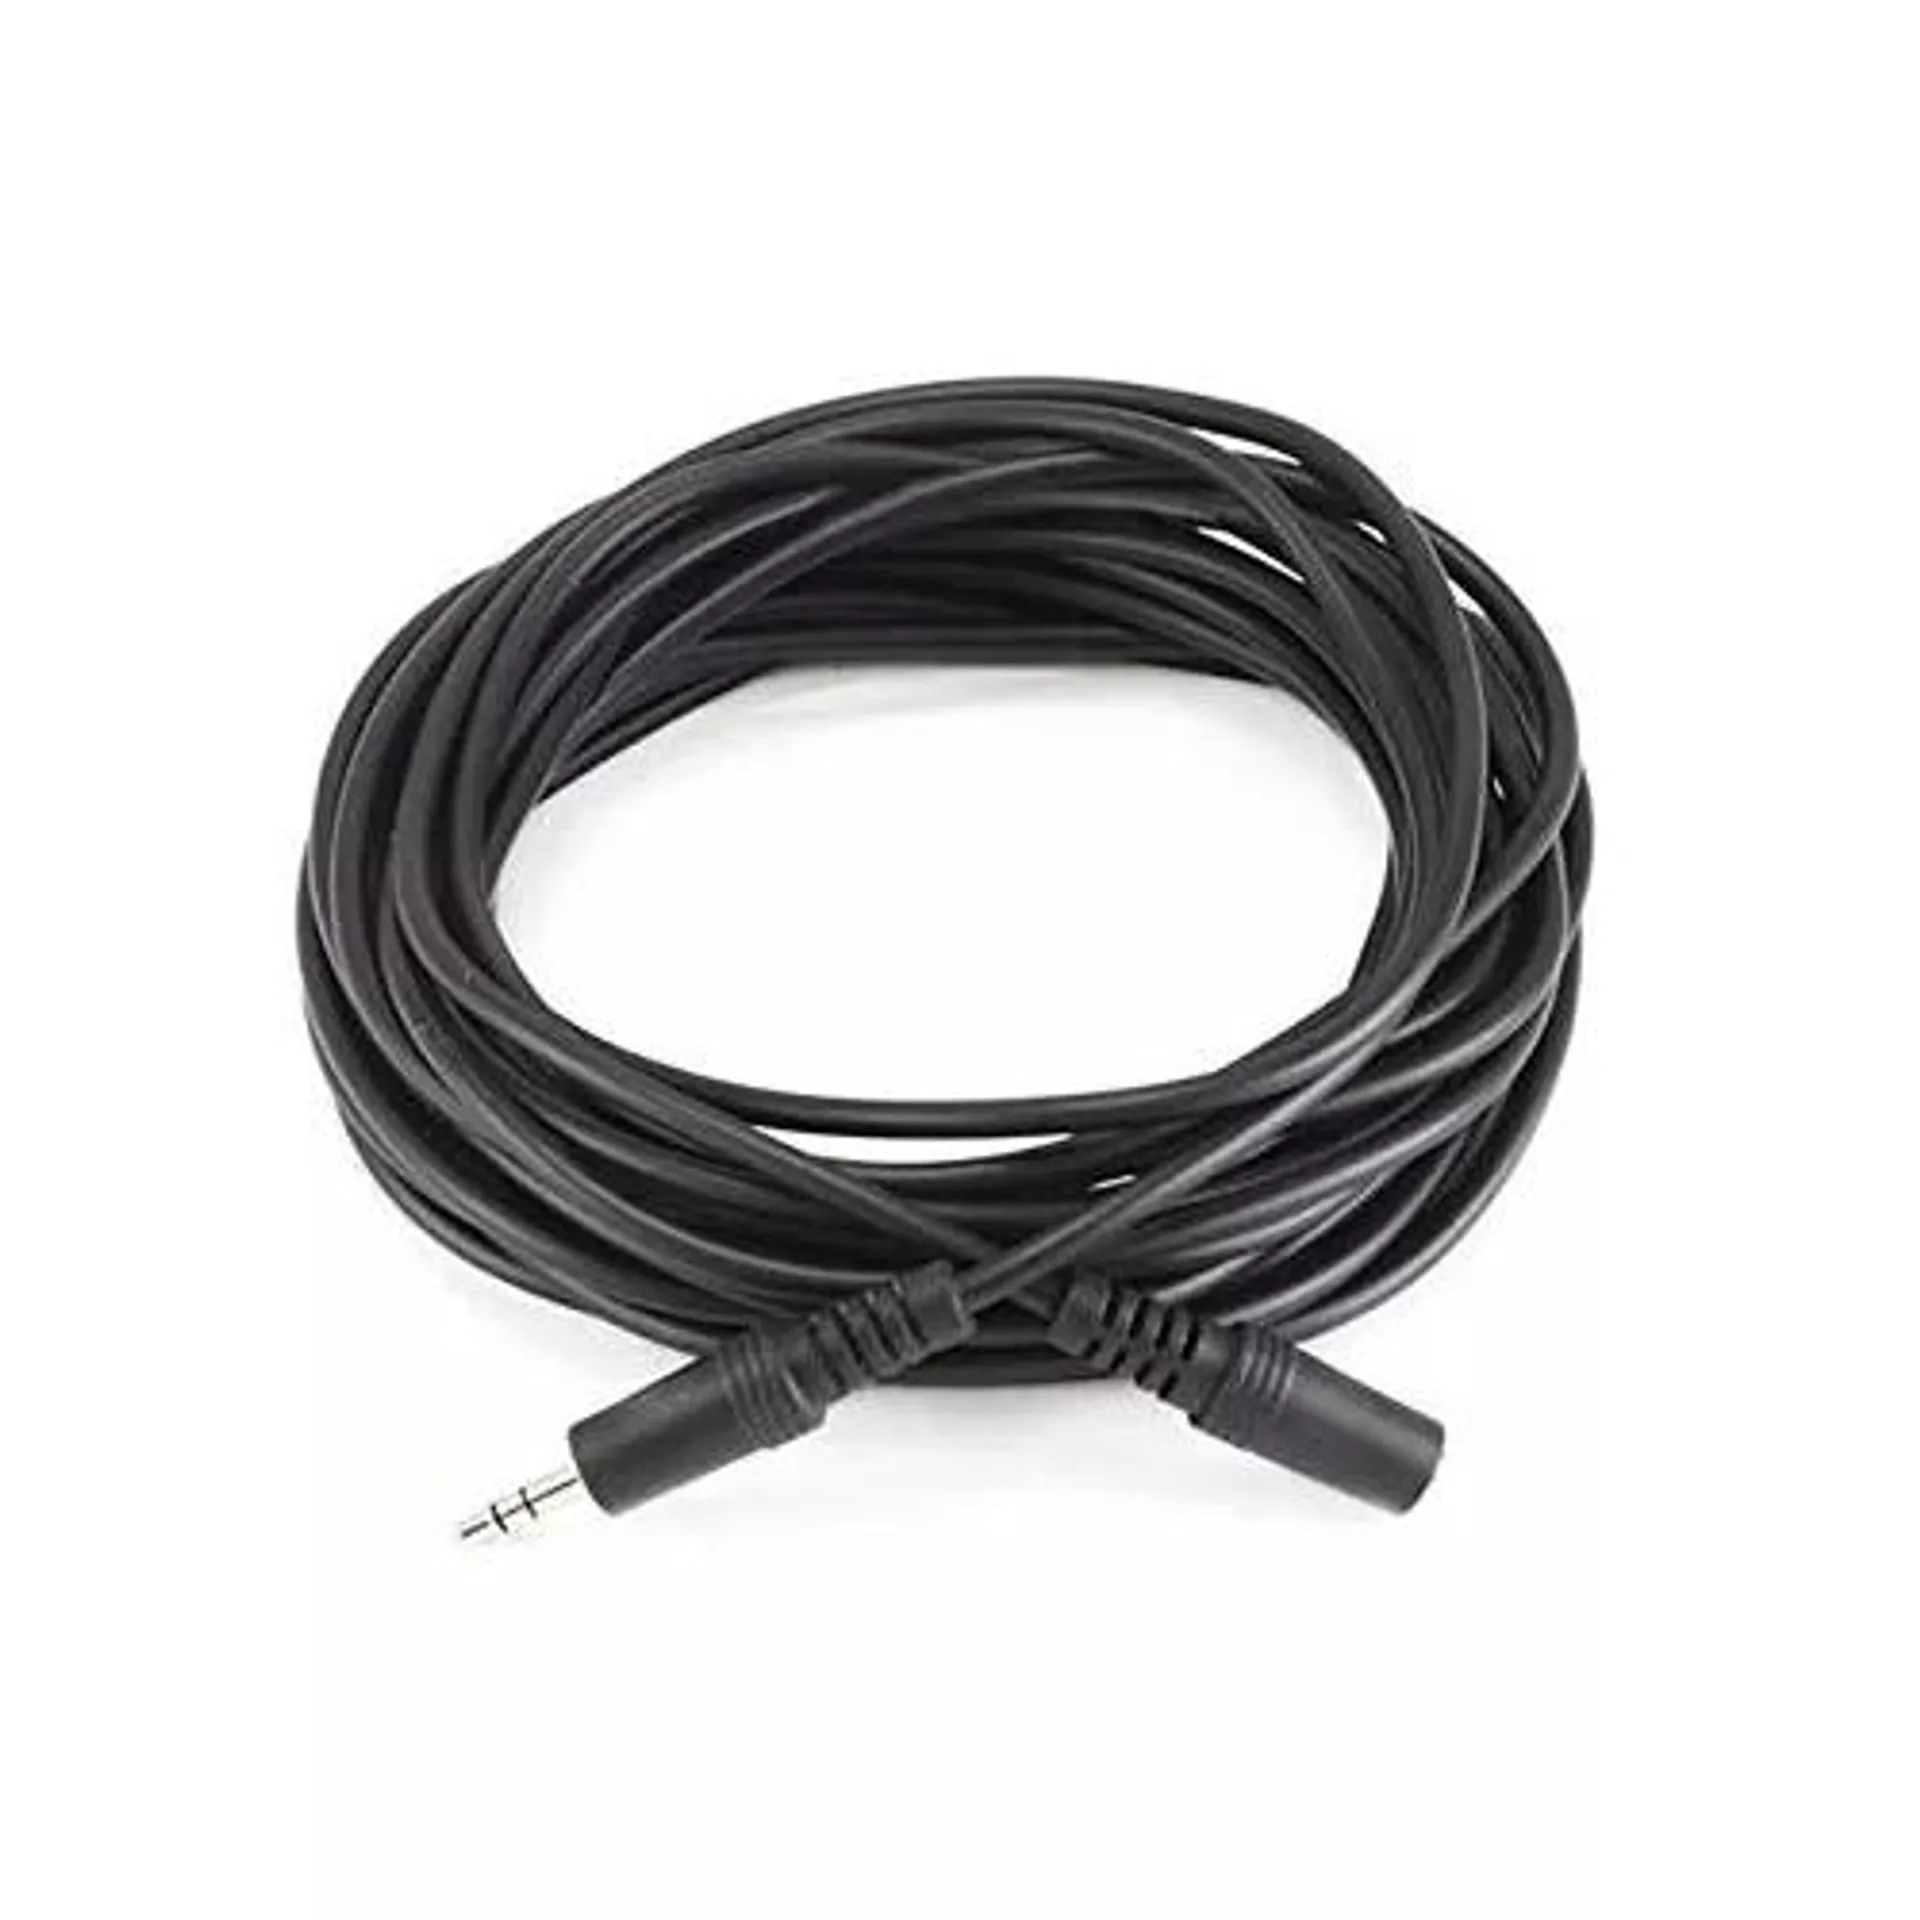 Cable de audio Alargador fonos 3 mts plug Jack 3.5 macho - 3.5 hembra stereo pn: SP-7151-3m